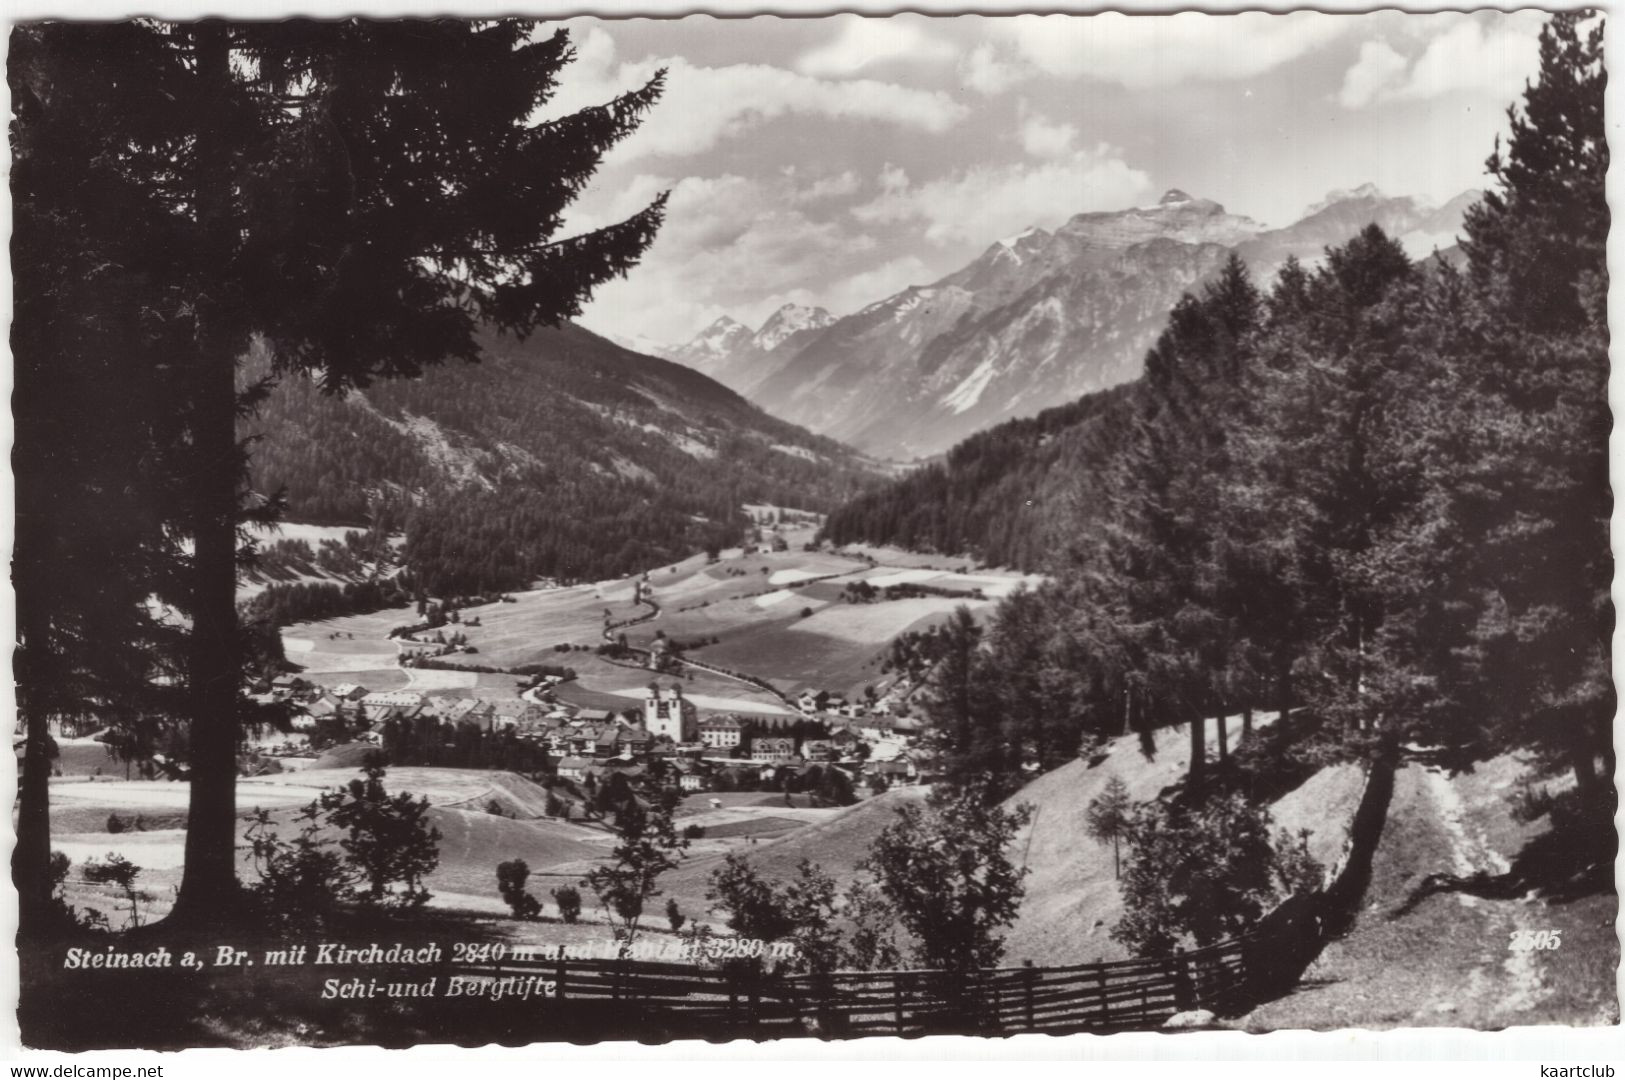 Steinach A, Br. Mit Kirchdach 2840 M Und Habicht 3280 M - Schi- Und Berglifte -  (Tirol, Österreich / Austria) - 1963 - Steinach Am Brenner